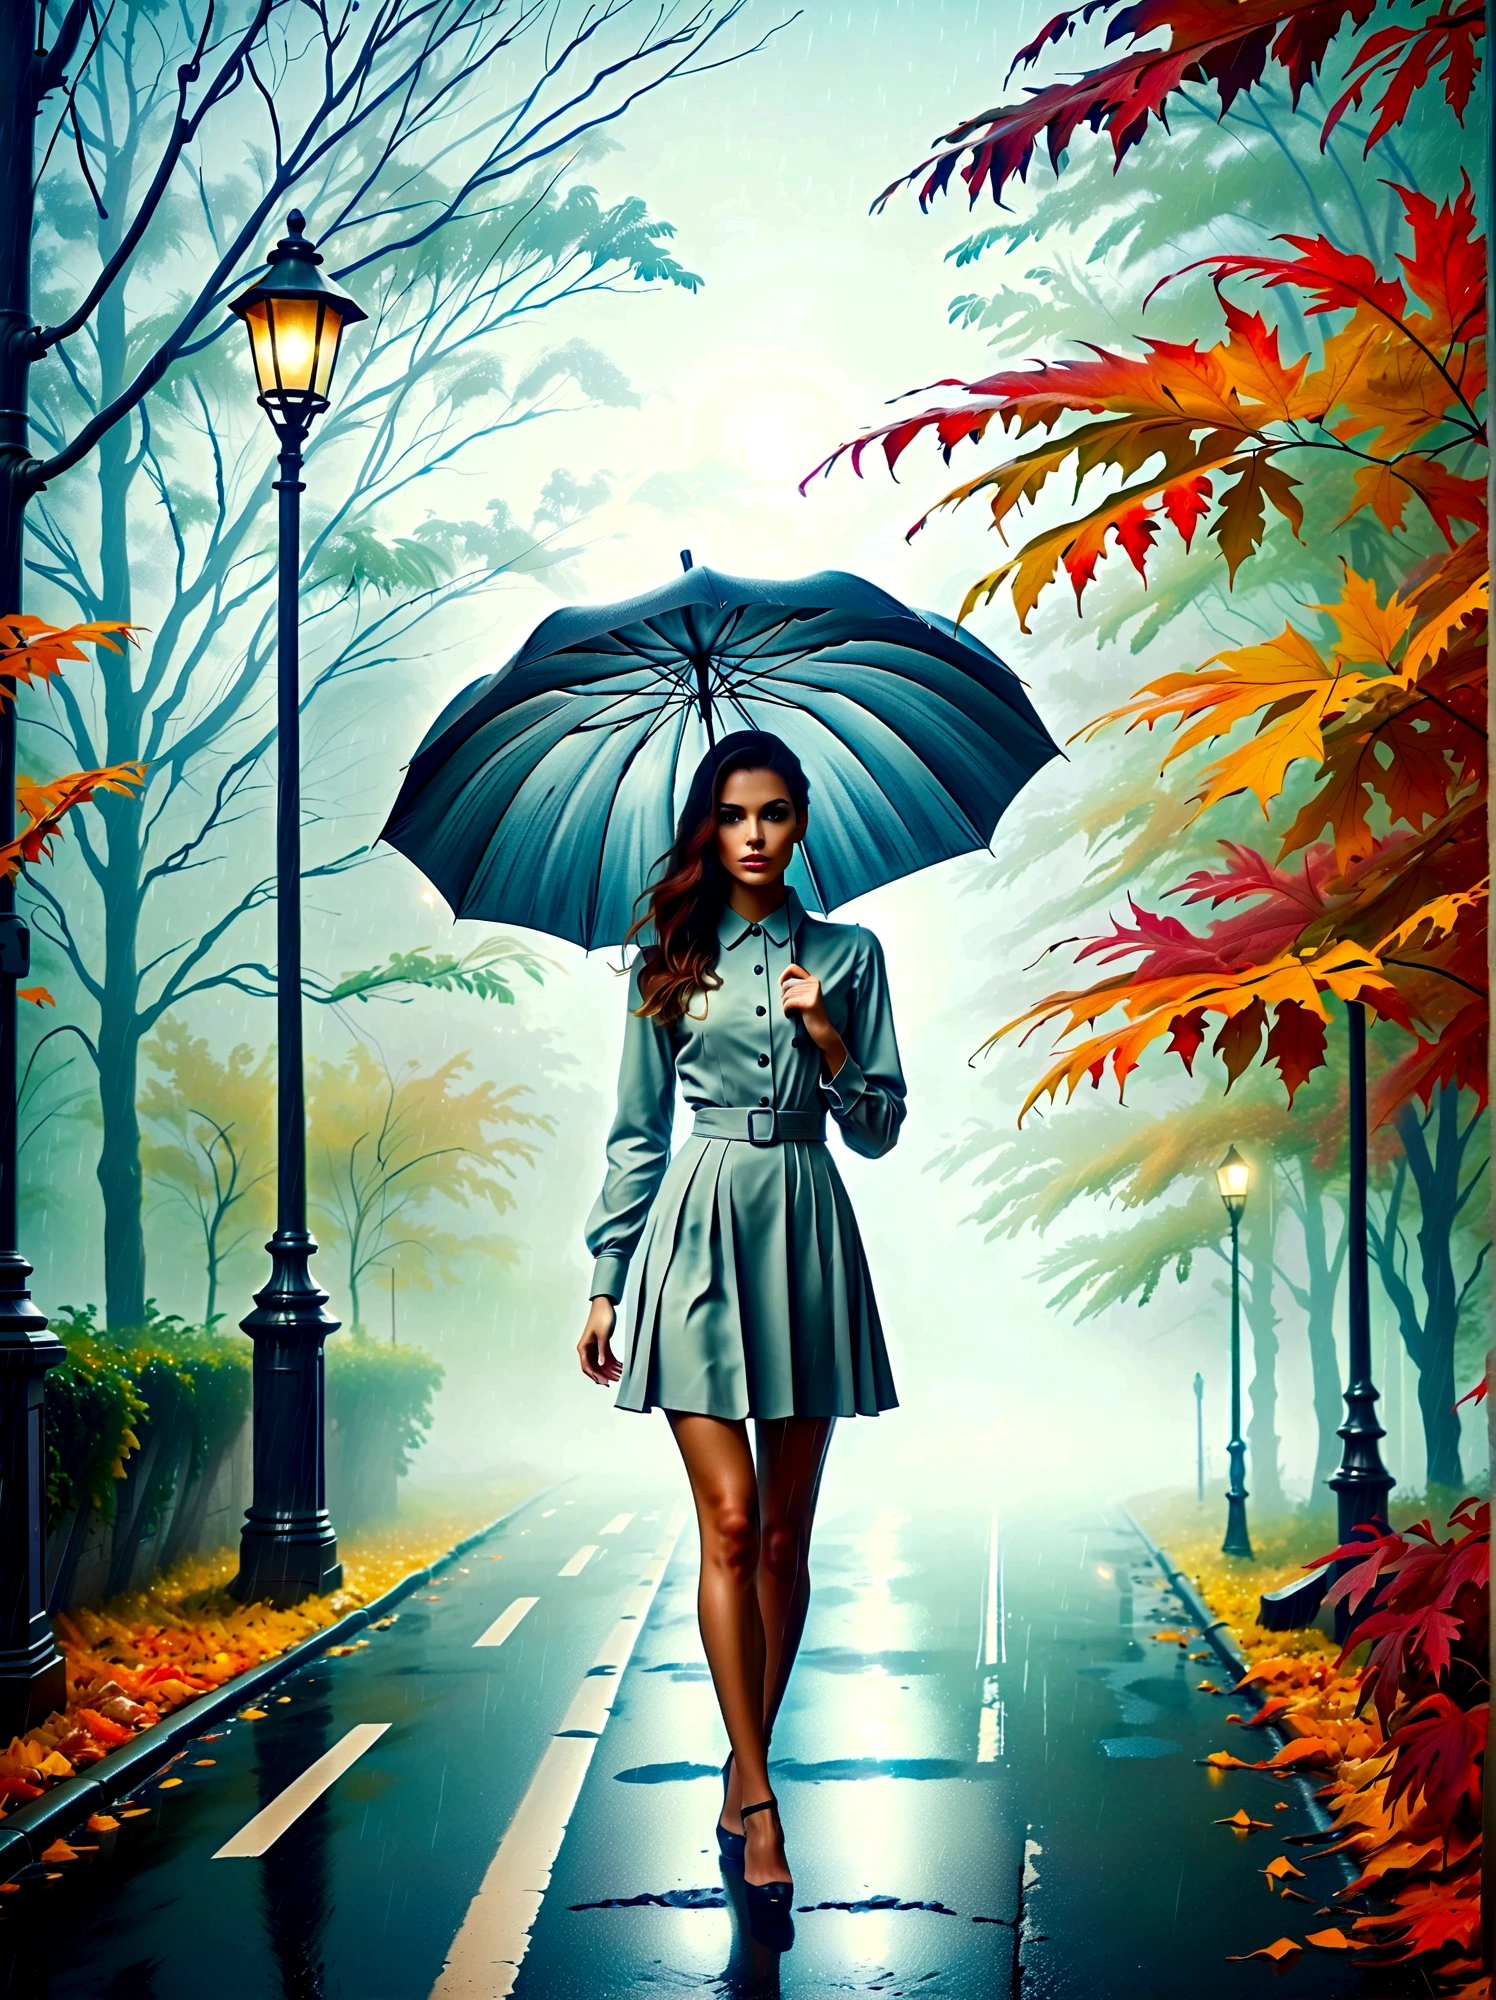 Женщина в облегающем платье с зонтиком в руке, in einer туманныйen Stadt, разноцветные осенние листья на улице, картина Куно Вибера, победитель конкурса pixabay, концептуальное искусство, стою под дождем,  mysterious женщина, красивая девушка, который стоит под дождем, одинокий человек с зонтиком, женщина ((Силуэт)), ((туманный)) и дождливый, женский образ в тени, в дождливую погоду, дождливая погода, Дождливые дороги на заднем плане , ((Туман со светом)), ((вид сзади)), свет спереди